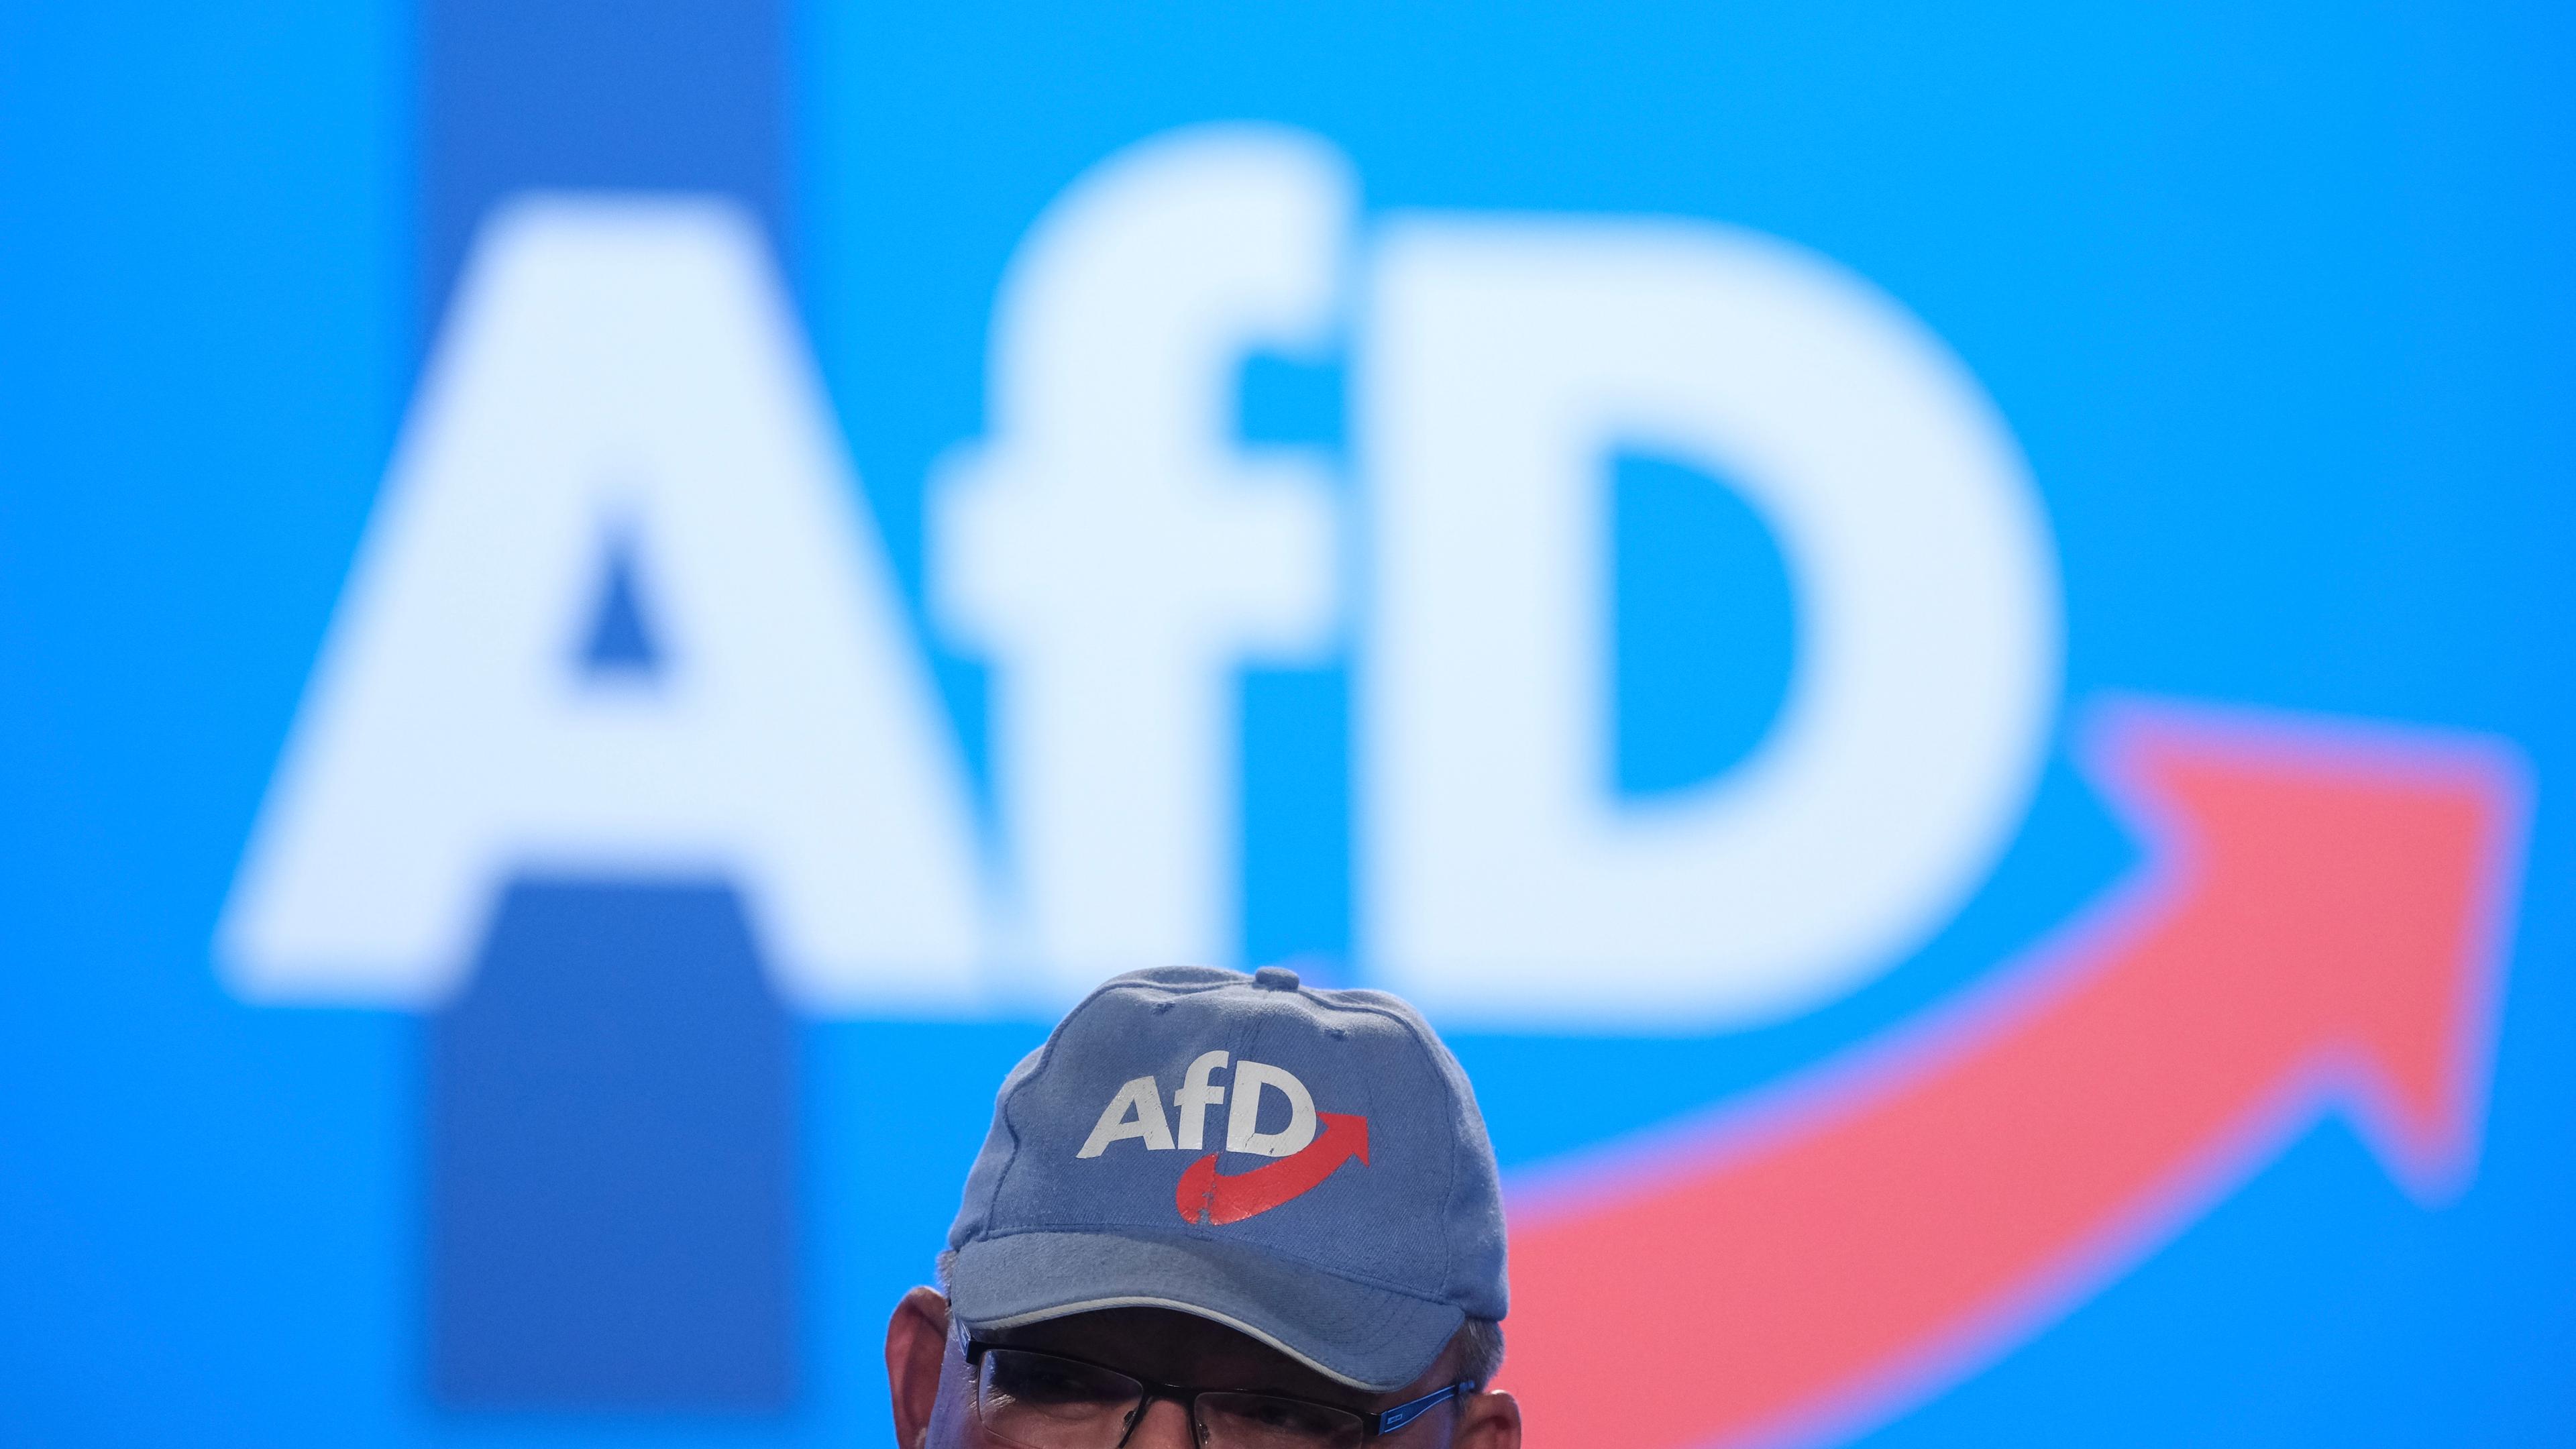 Eine AfD-Kappe vor einem großen Afd-Logo an der Wand